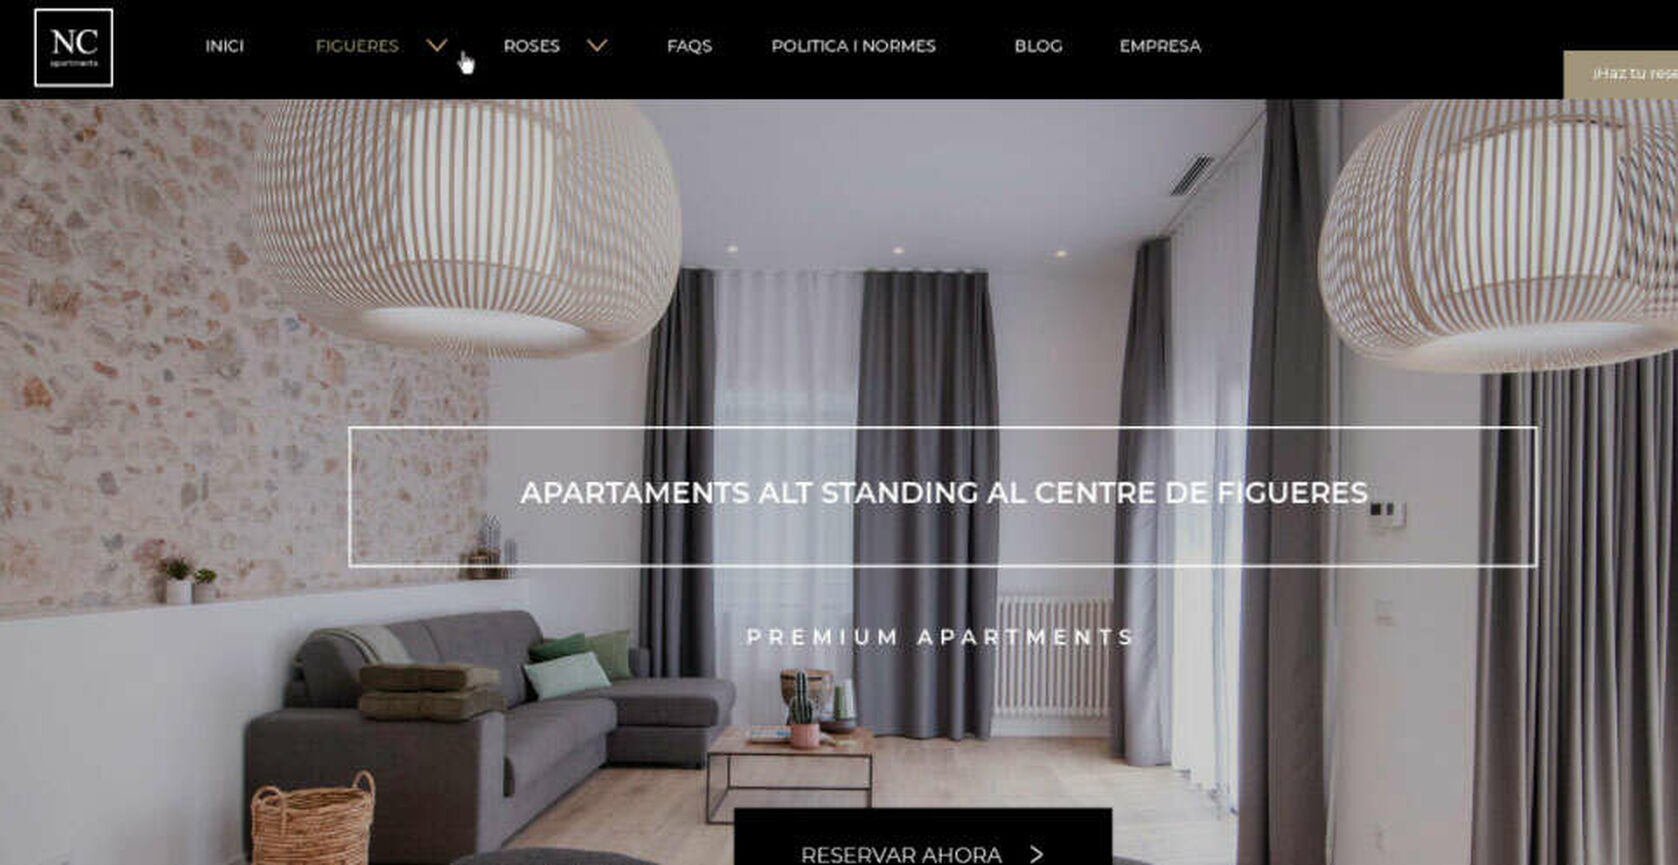 Projecte de disseny de la pàgina web de NC Apartaments a Figueres